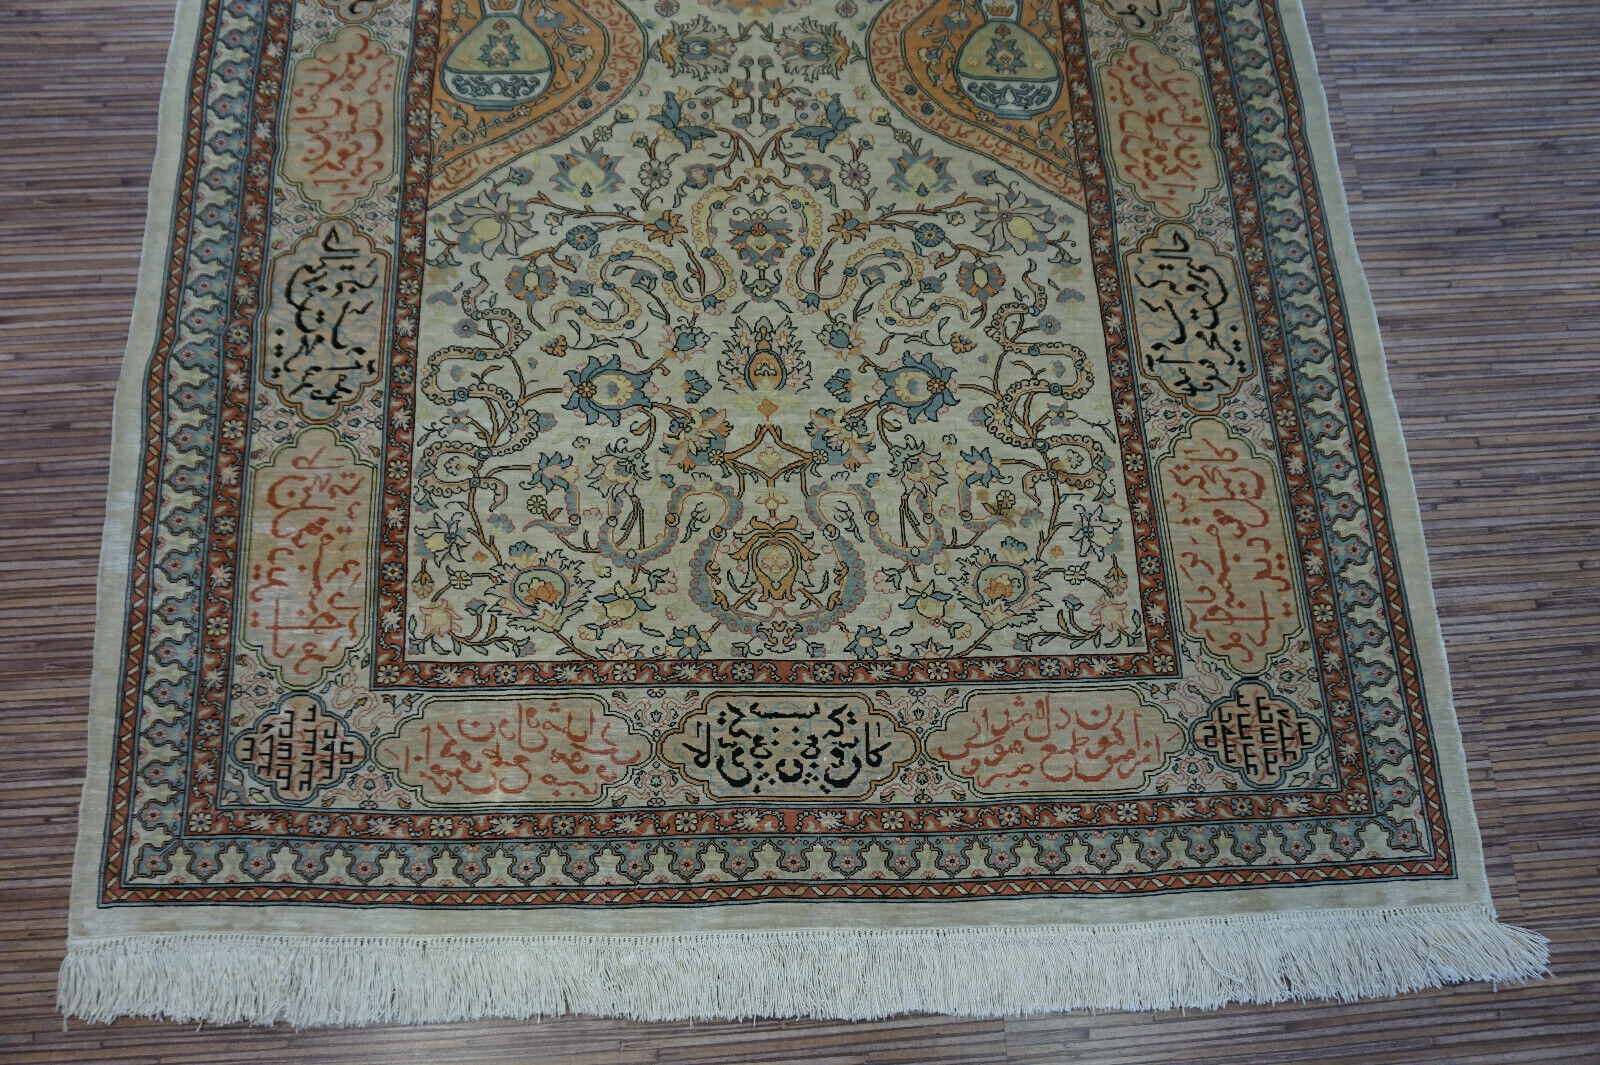 Side view of the Handmade Vintage Turkish Hereke Silk Rug demonstrating texture